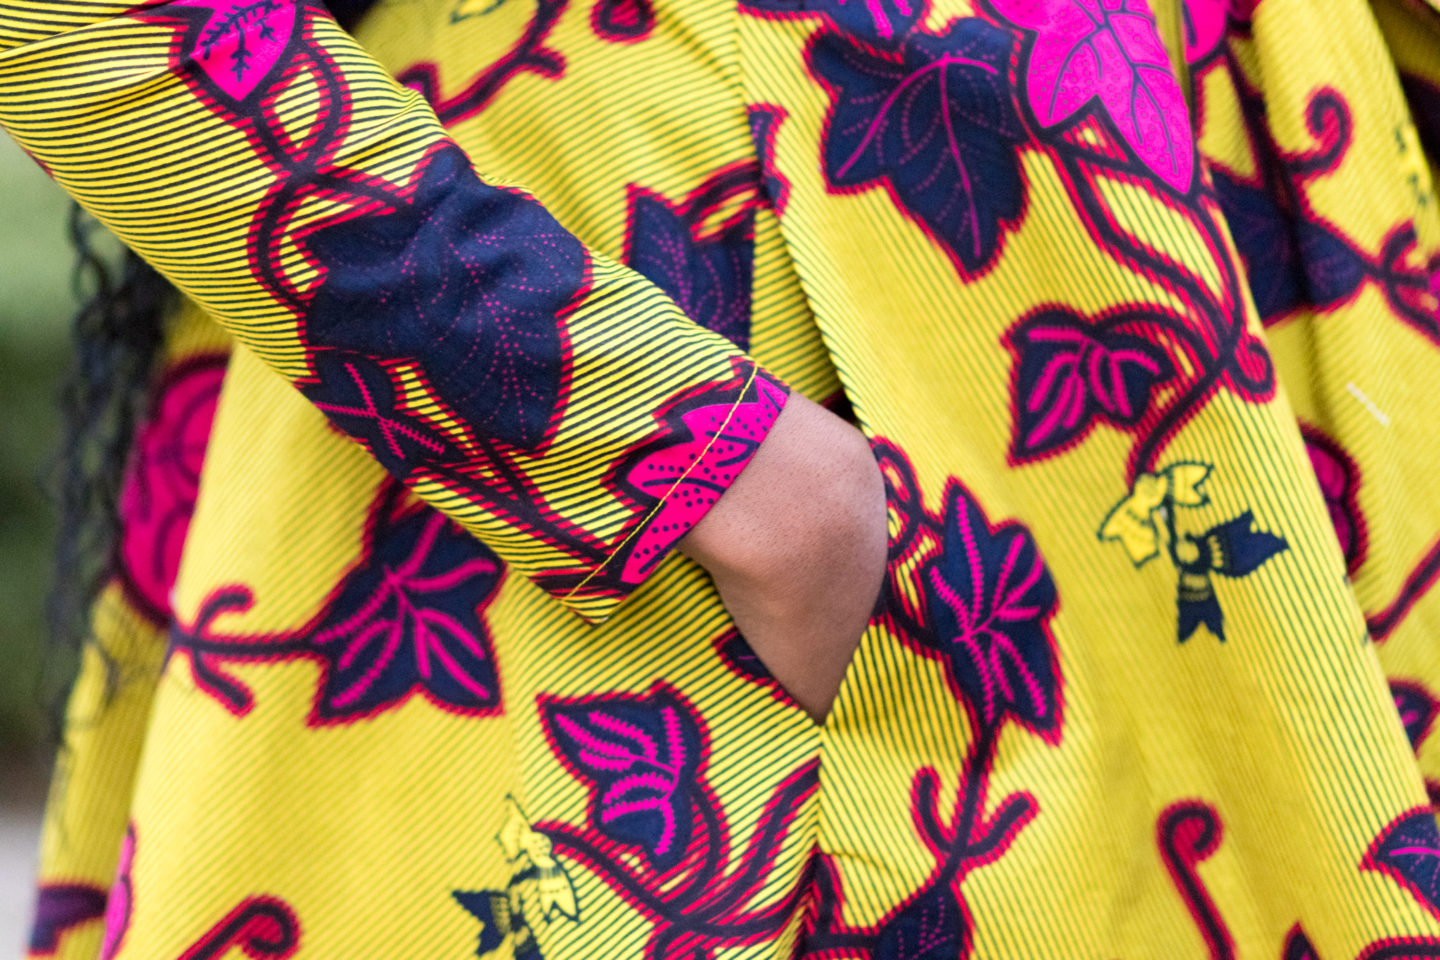 DIY Sewing Tutorial Wrap Coat Dress and Half Circle Skirt Ankara African Print Fashion